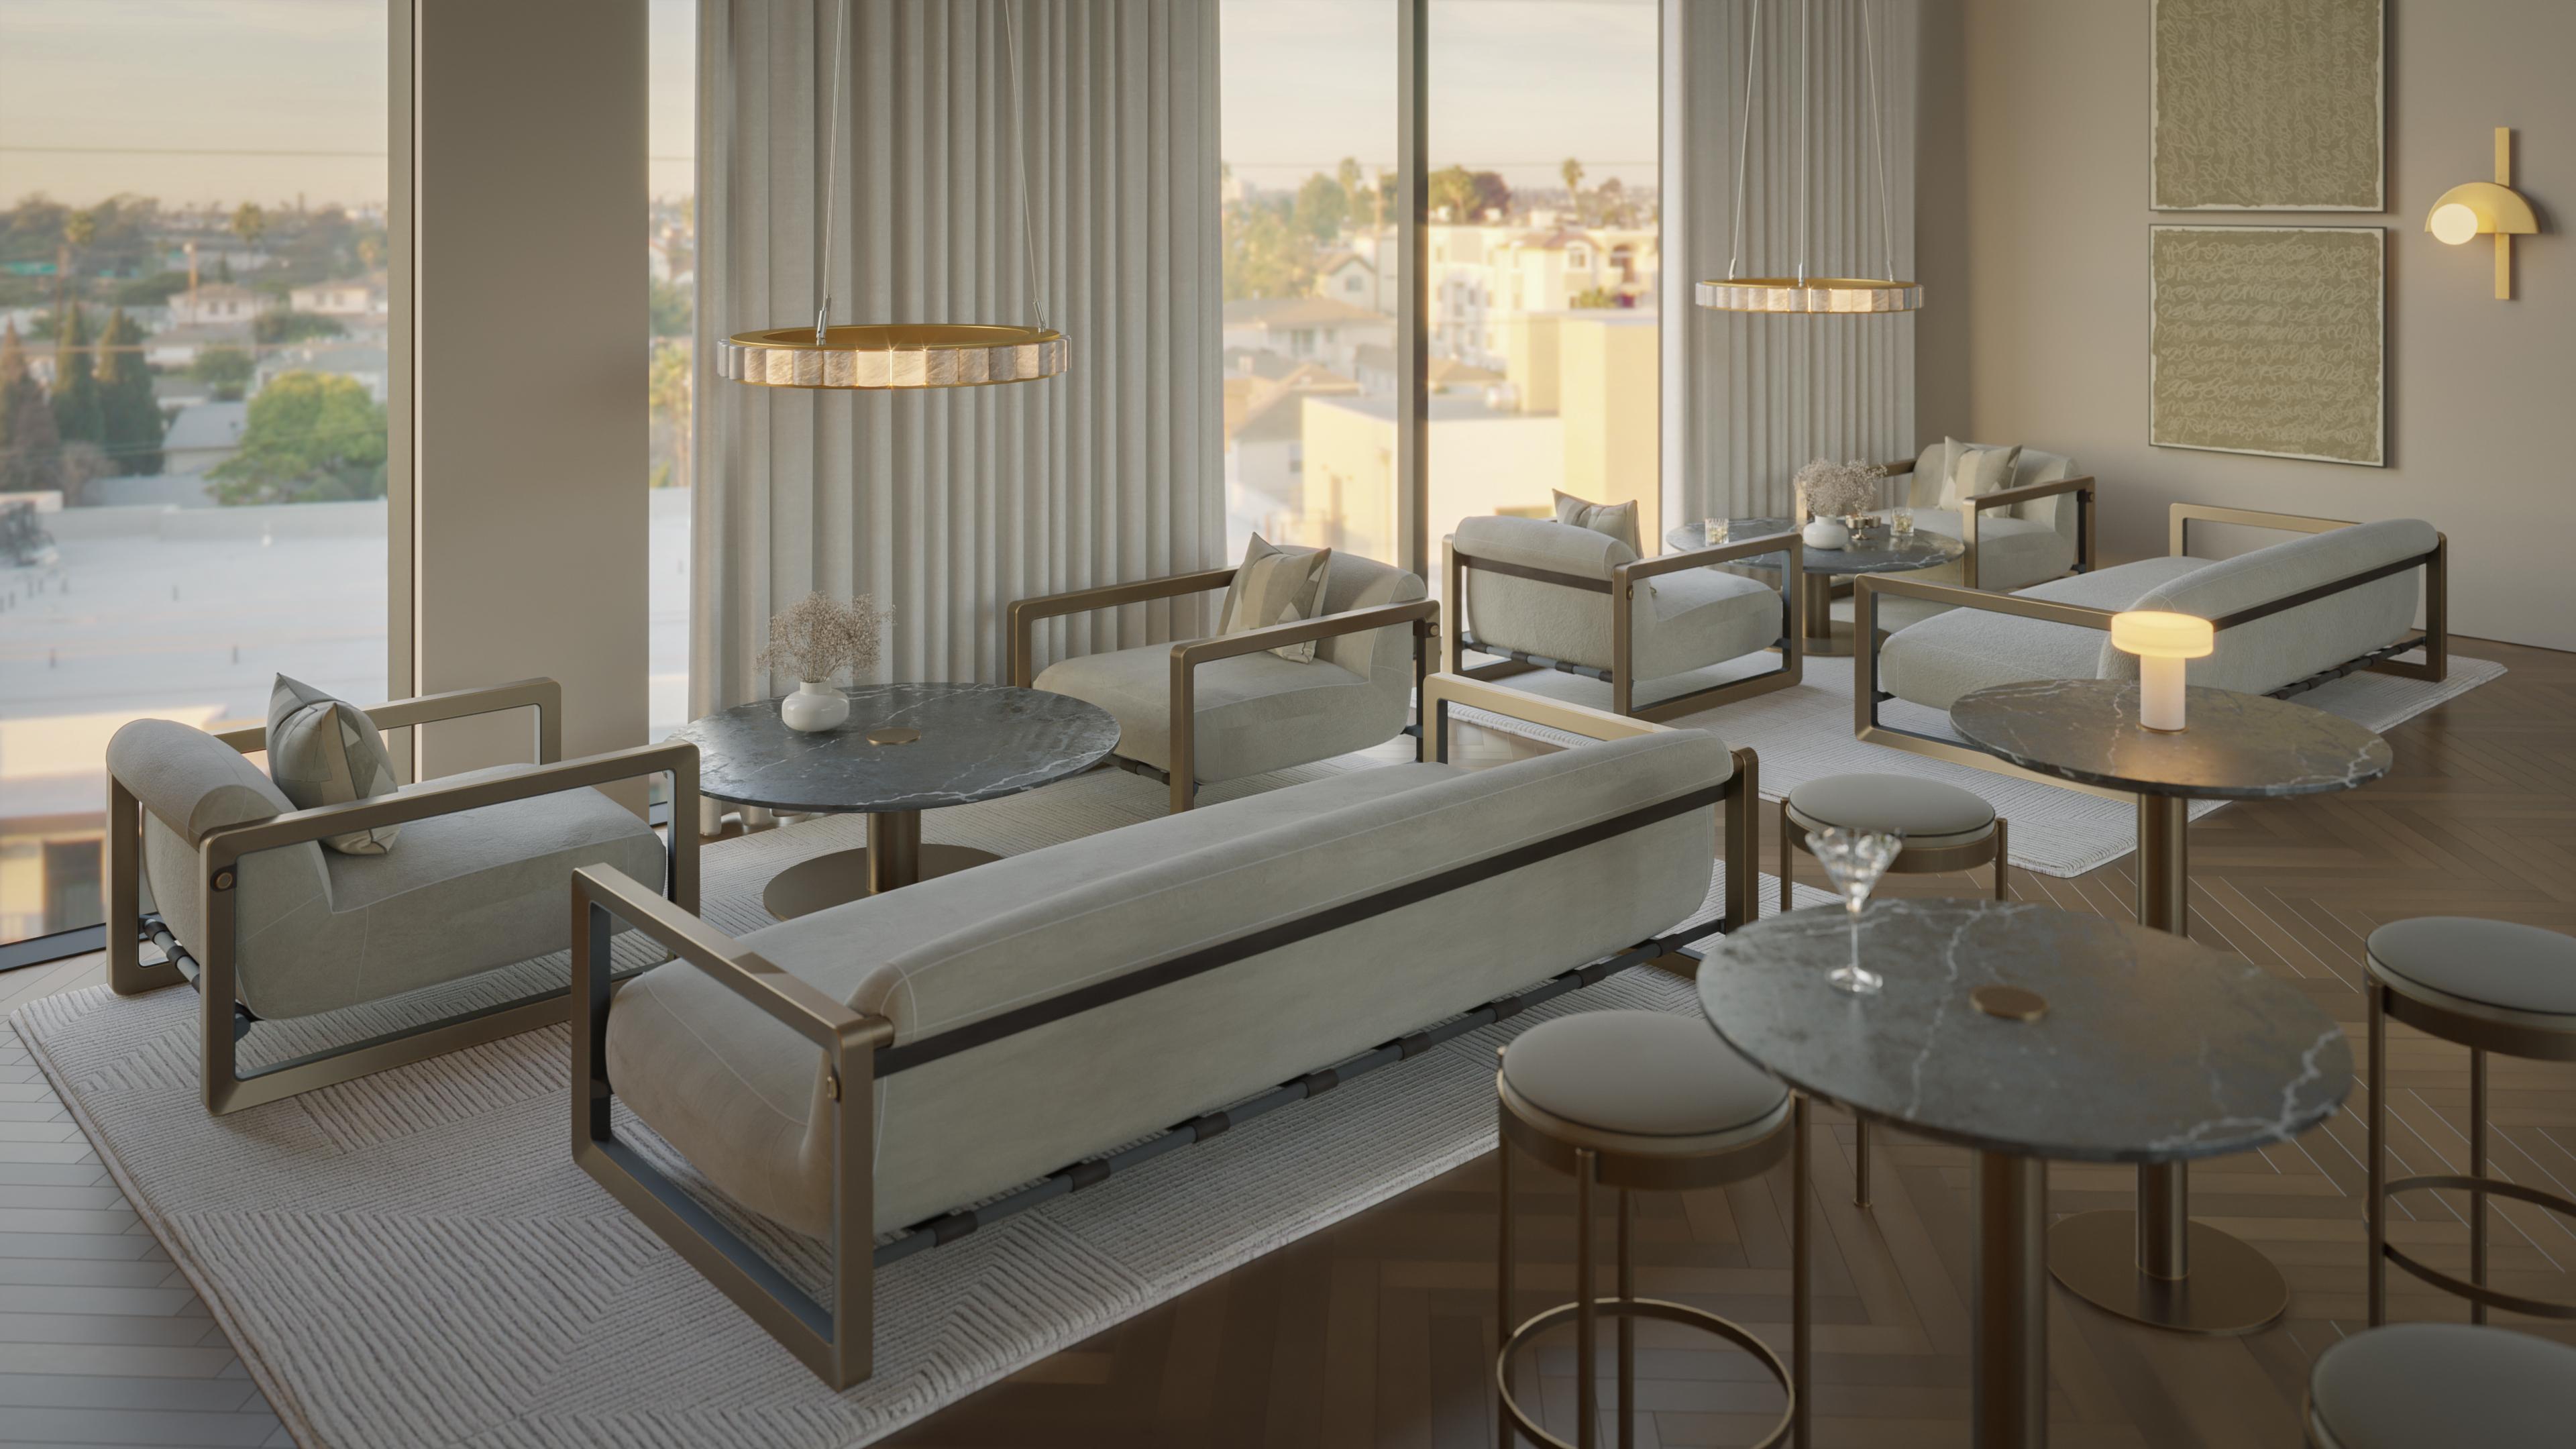 Der Dawn Lounge Table ist die perfekte Kombination aus Eleganz und Vielseitigkeit, die ihn zu einem herausragenden Element in jeder Umgebung macht. Mit seiner üppigen Marmorplatte wertet dieser Tisch die Ästhetik Ihres Raumes sofort auf und verleiht